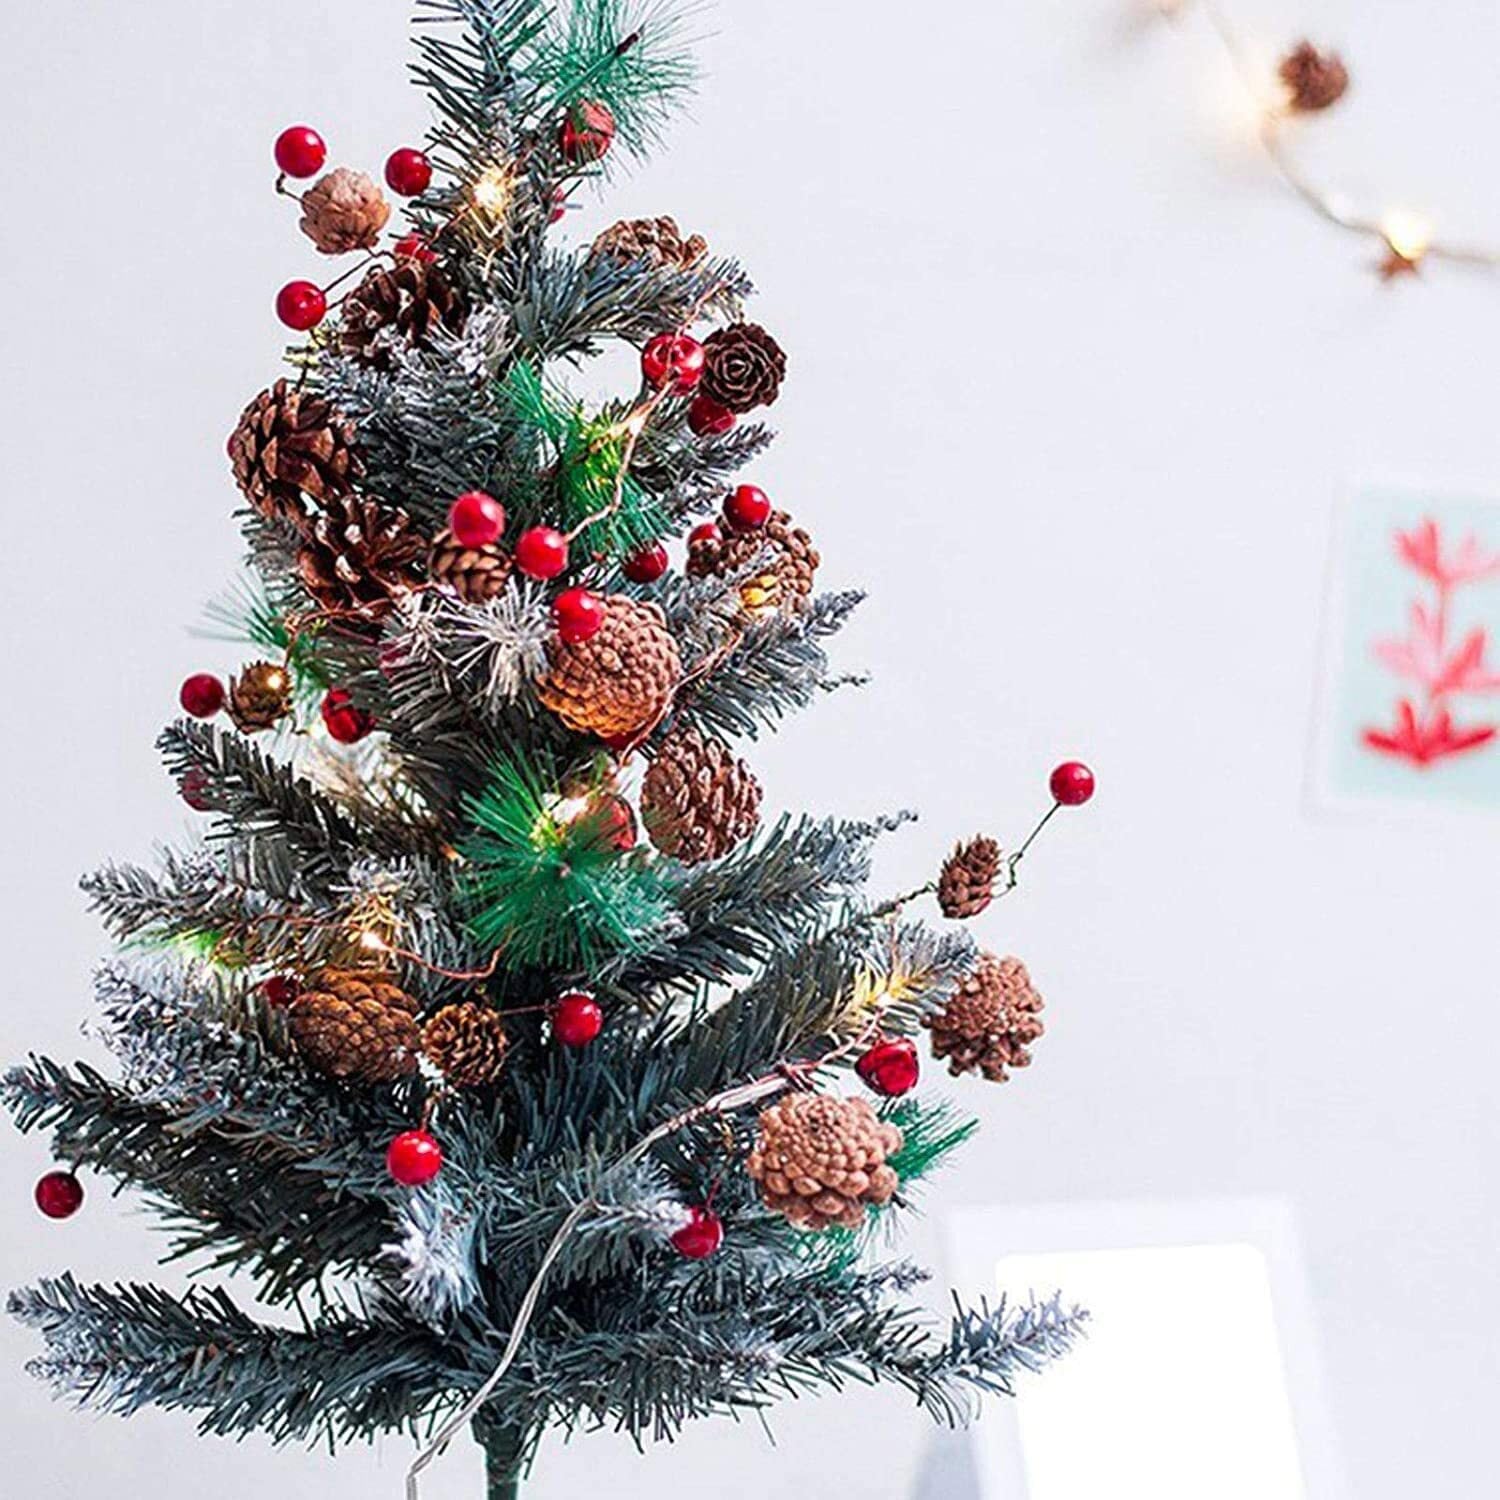 クリスマス お正月 飾り LED ライト 松 松ぼっくり サンキライ 赤い実 ヒイラギ 星 star Xmas 装飾 イルミネーション デコレーション  2m 20灯 shop Amalet